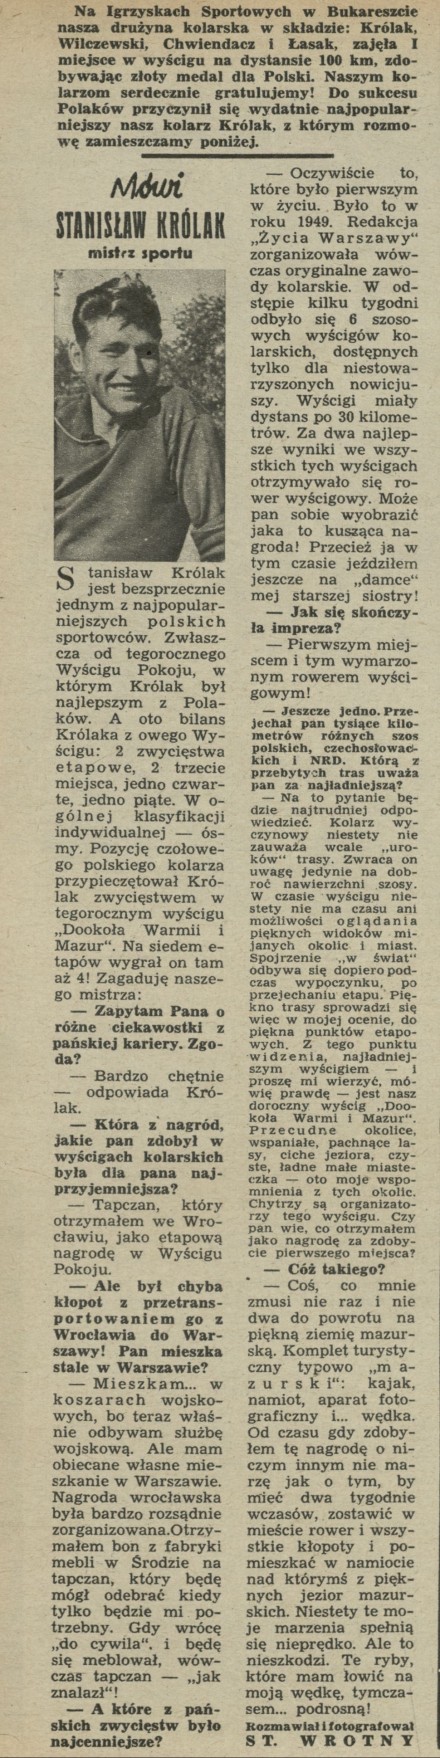 Mówi Stanisław Królak - mistrz sportu